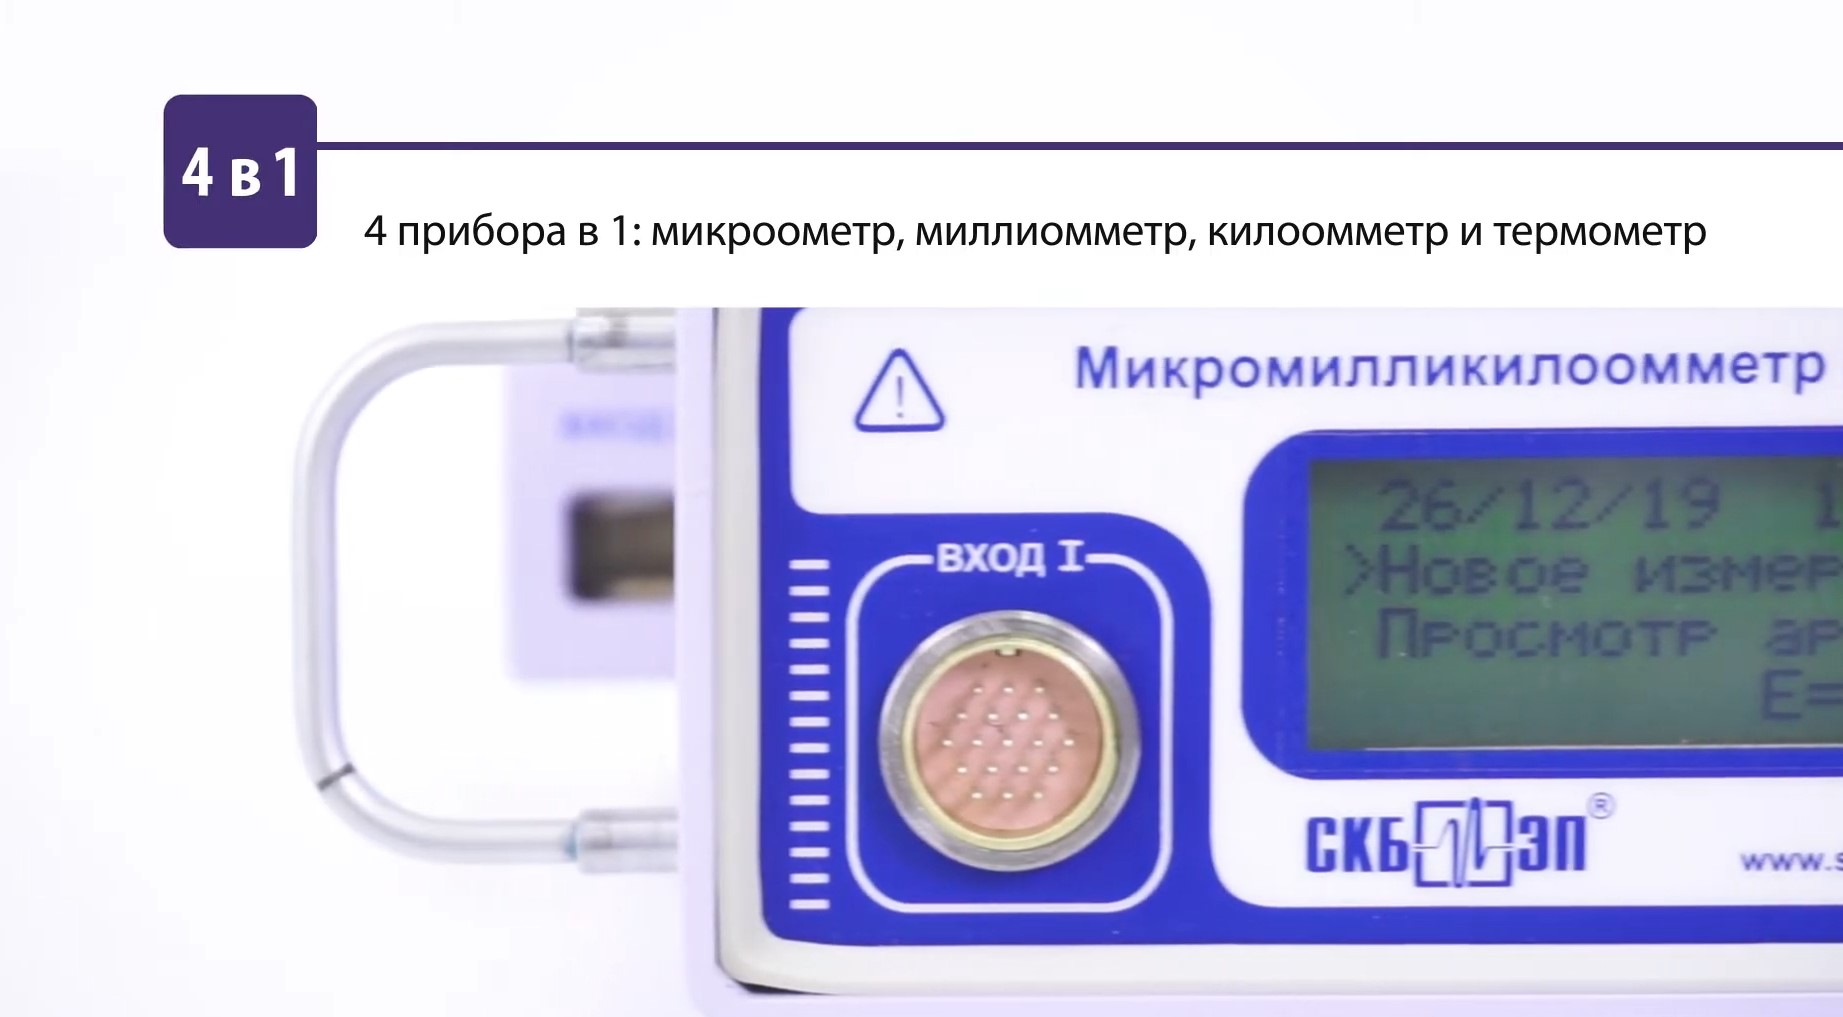 Видео-обзор микромилликилоомметр МИКО-2.3, СКБ ЭП. Портативная мини-лаборатория!